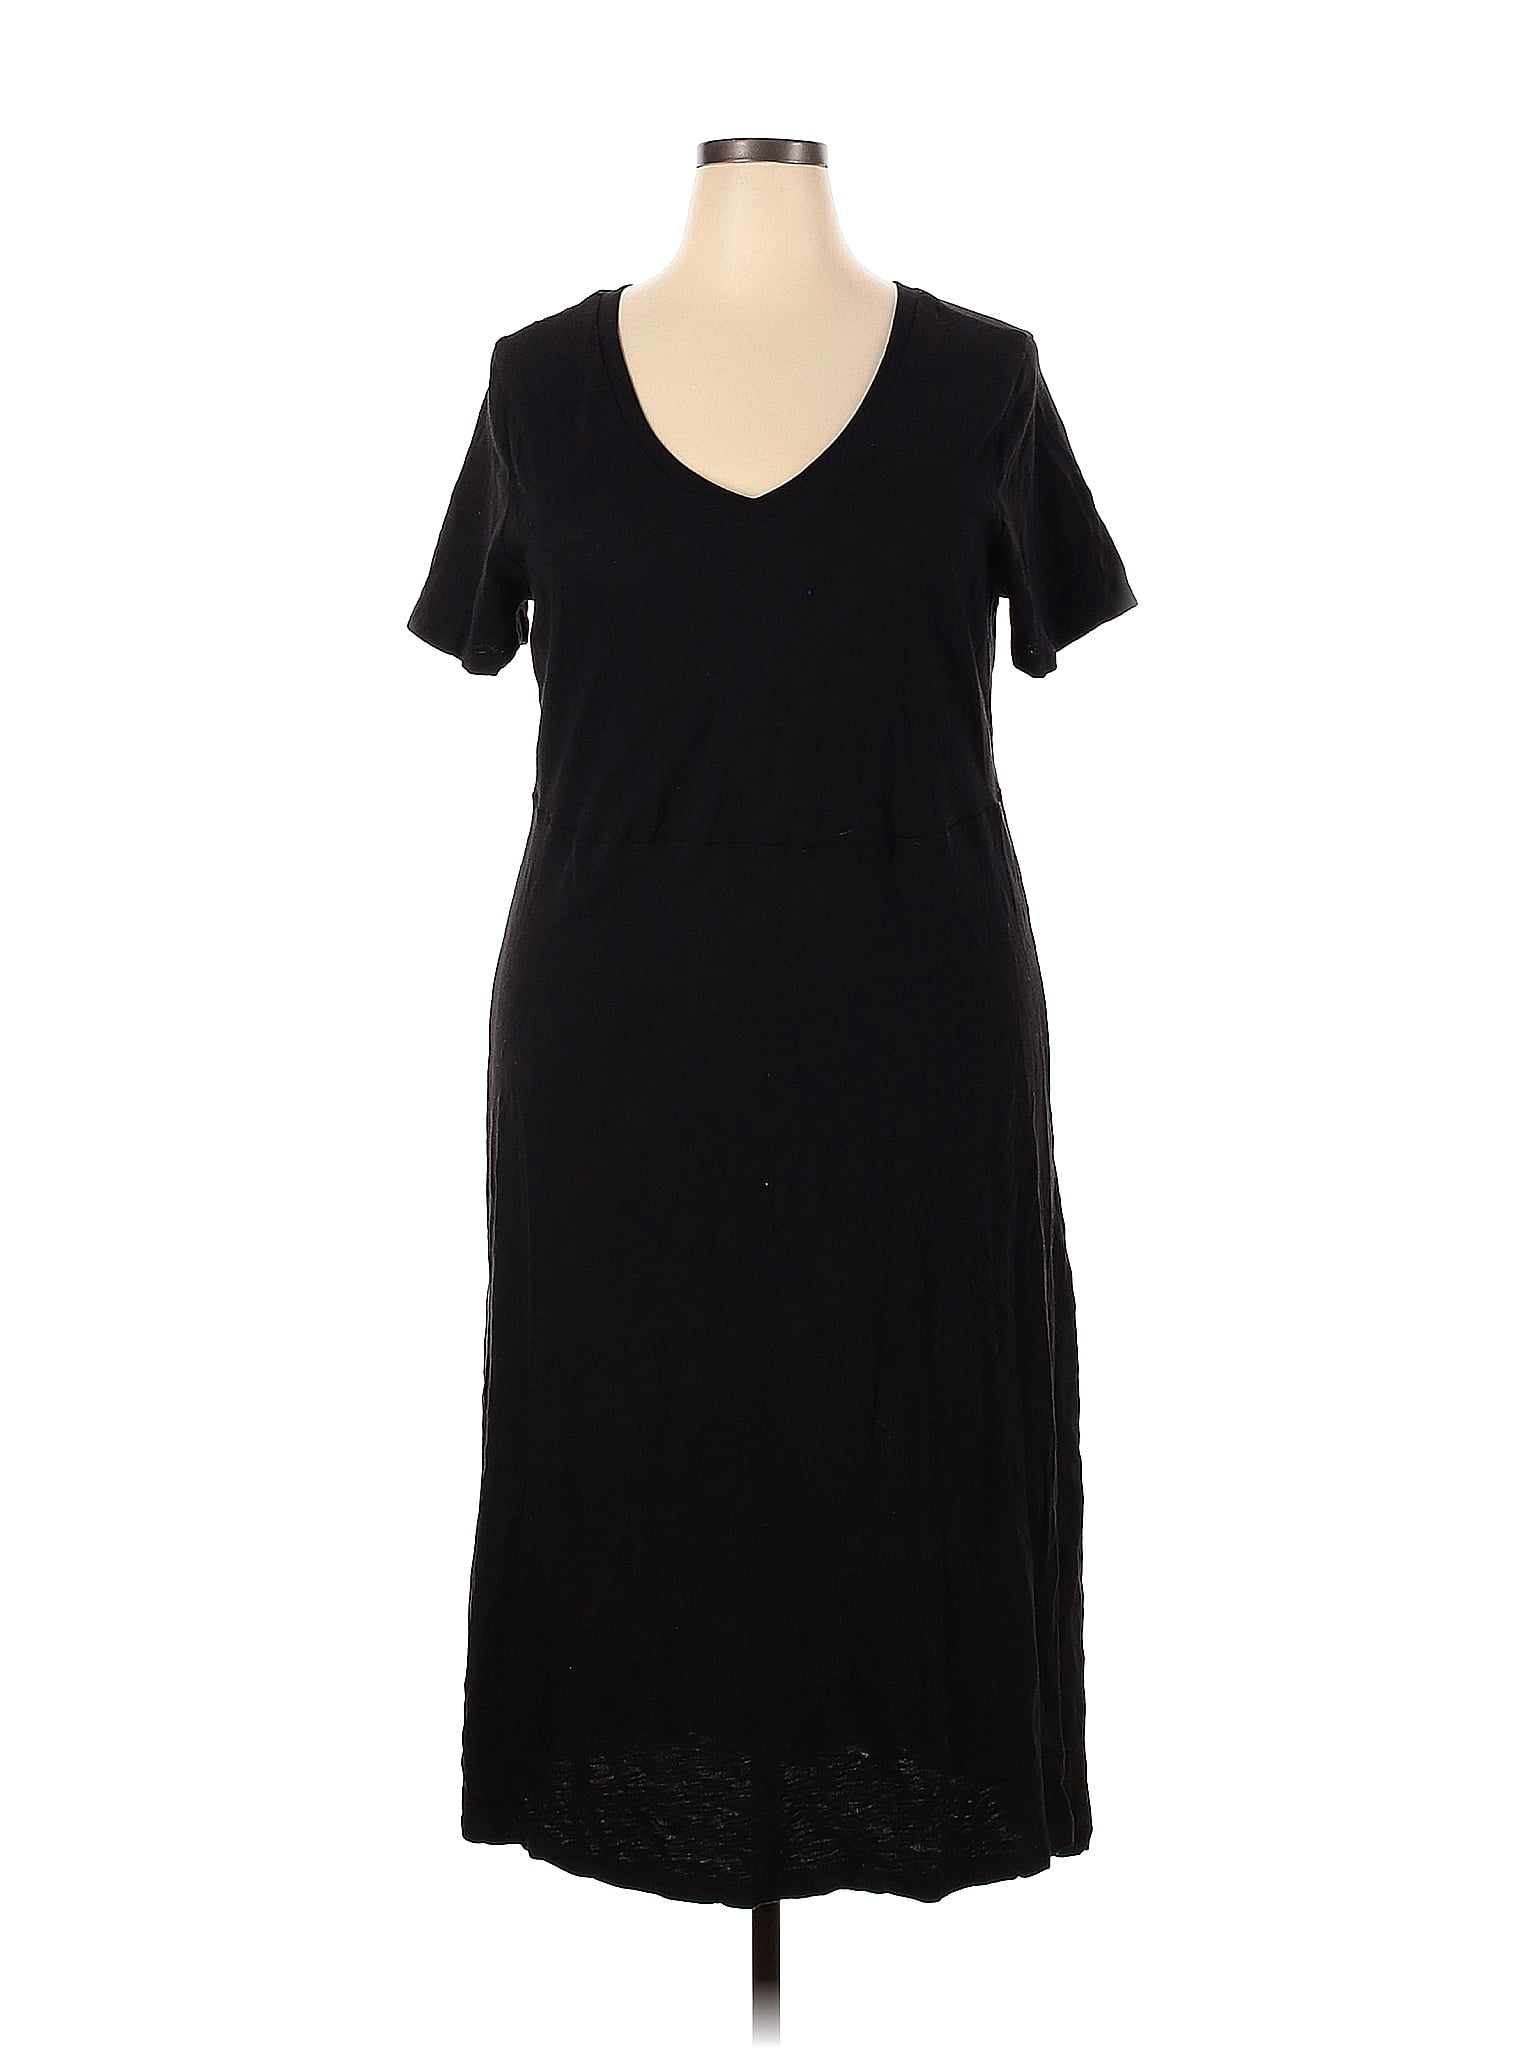 Torrid 100% Cotton Solid Black Casual Dress Size 2X Plus (2) (Plus ...